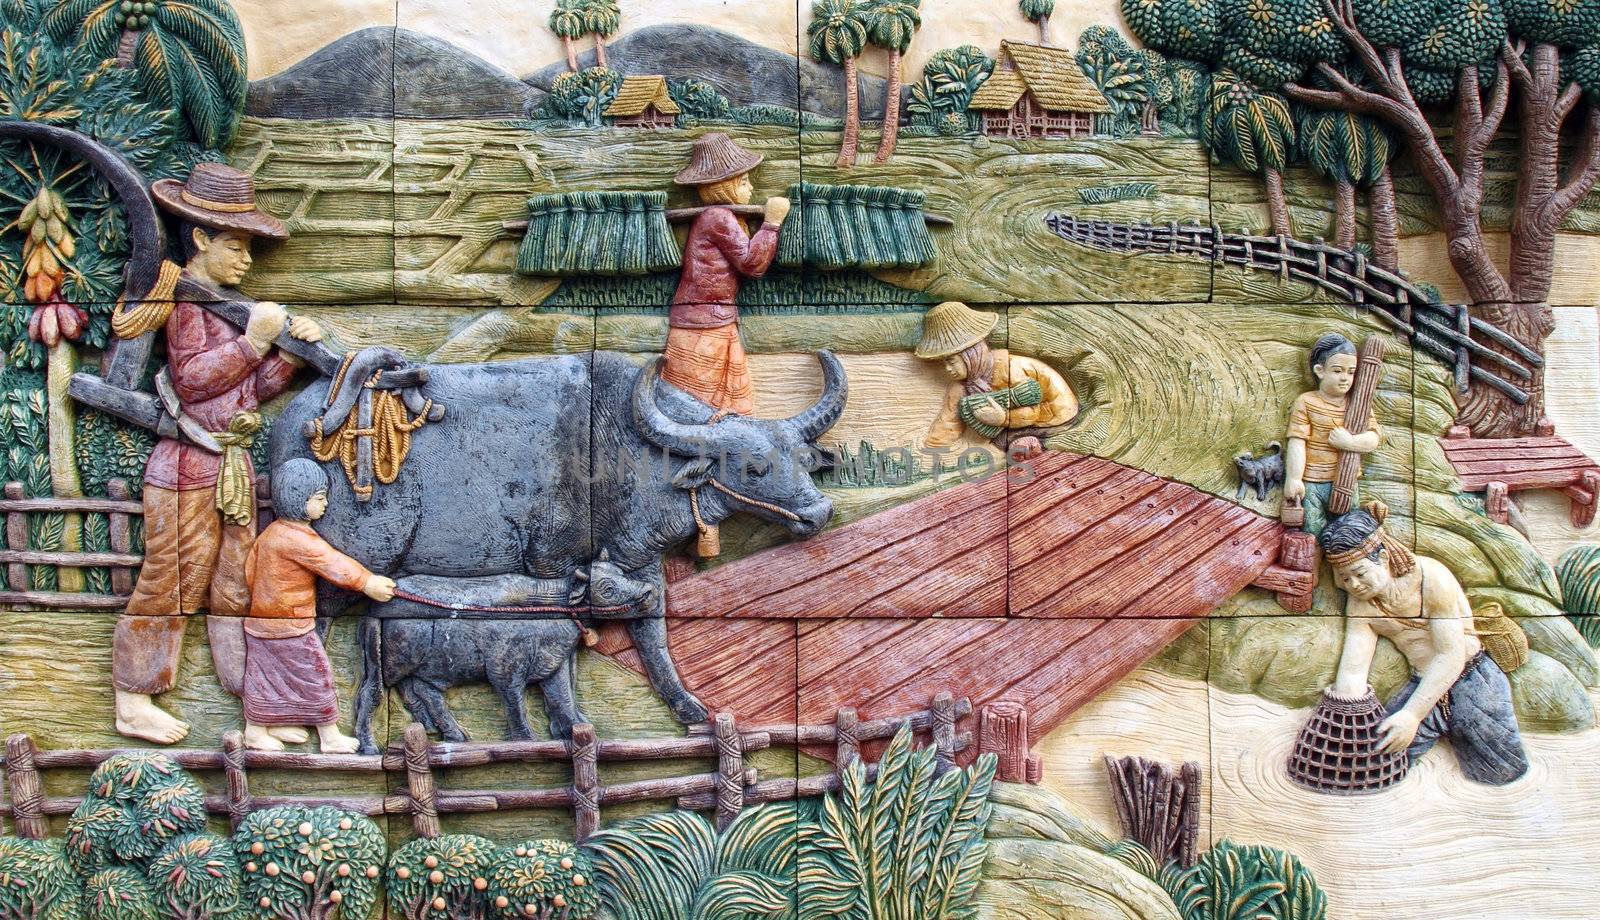 Thai farmer village, art on the wall